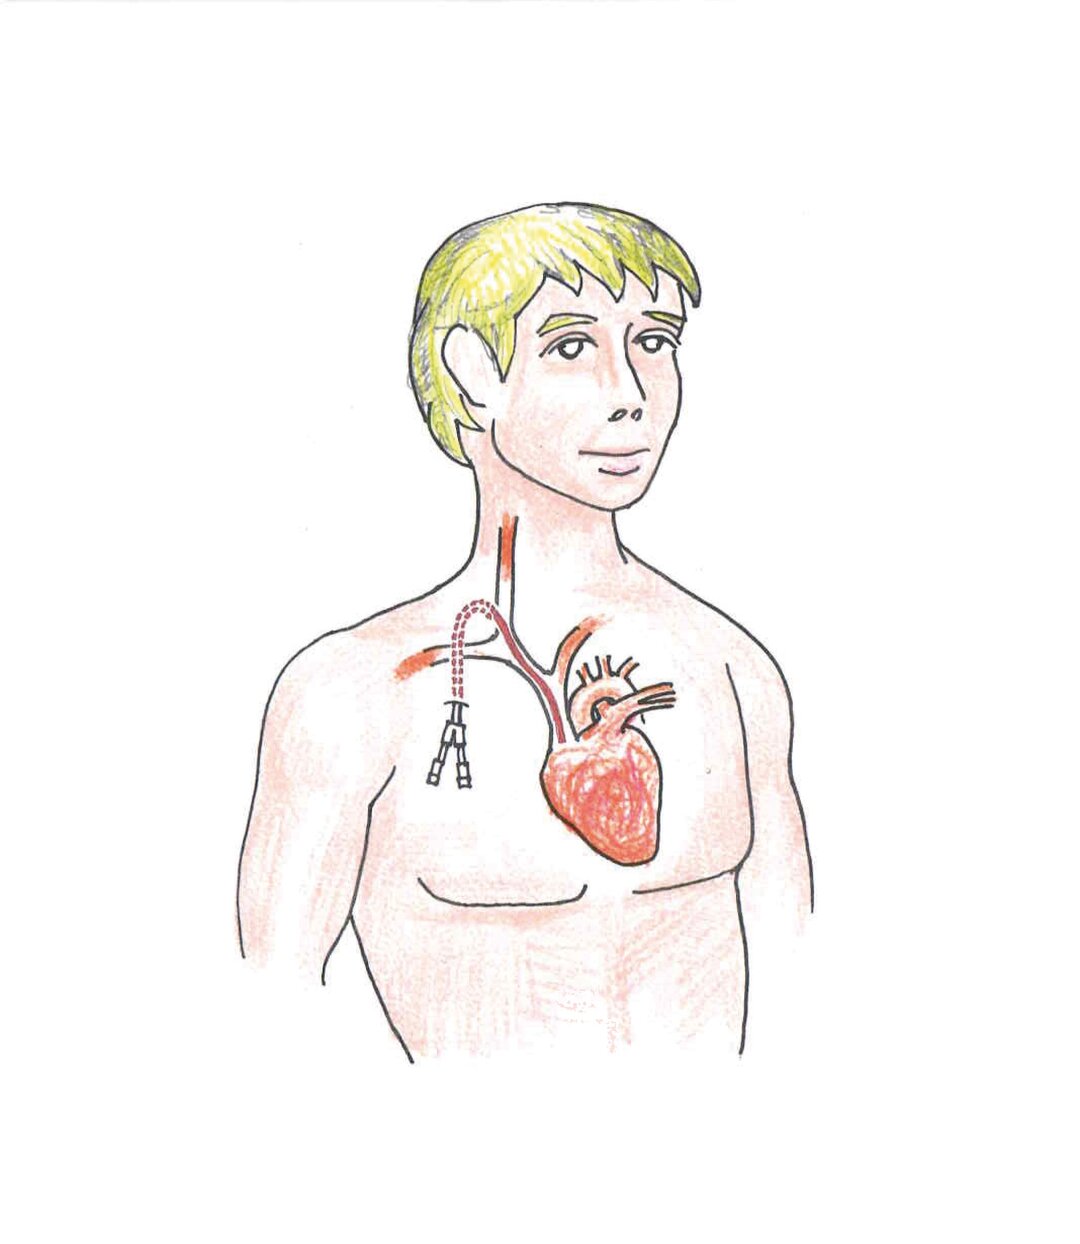 Tegning af patient, som viser hvordan dialysekateter placeres i kroppen.